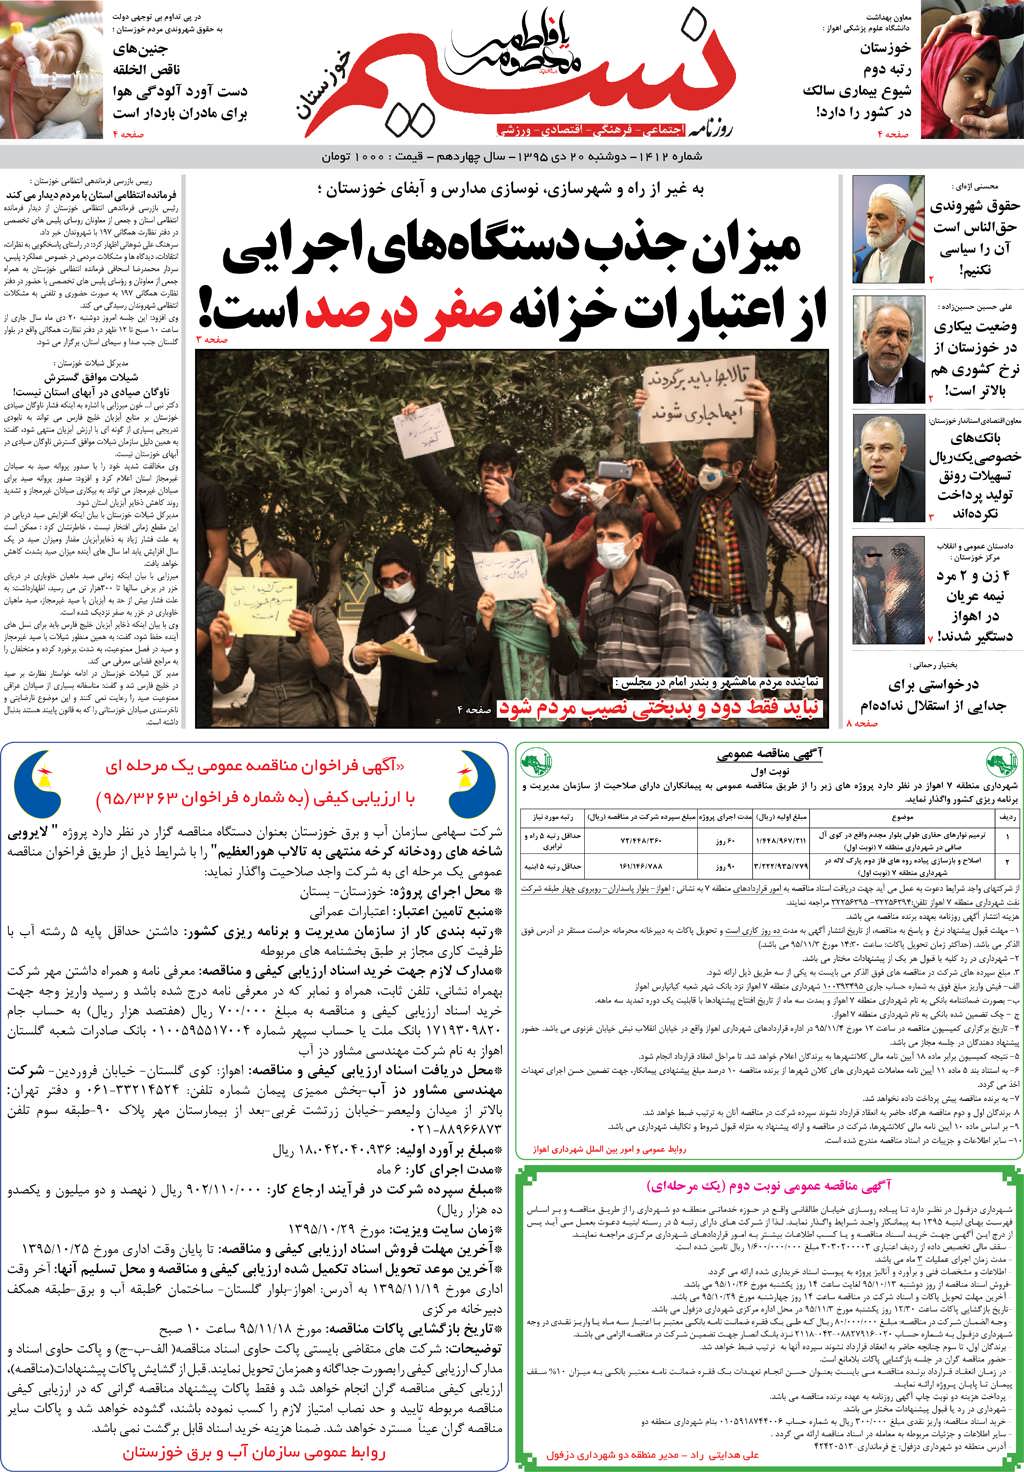 صفحه اصلی روزنامه نسیم شماره 1412